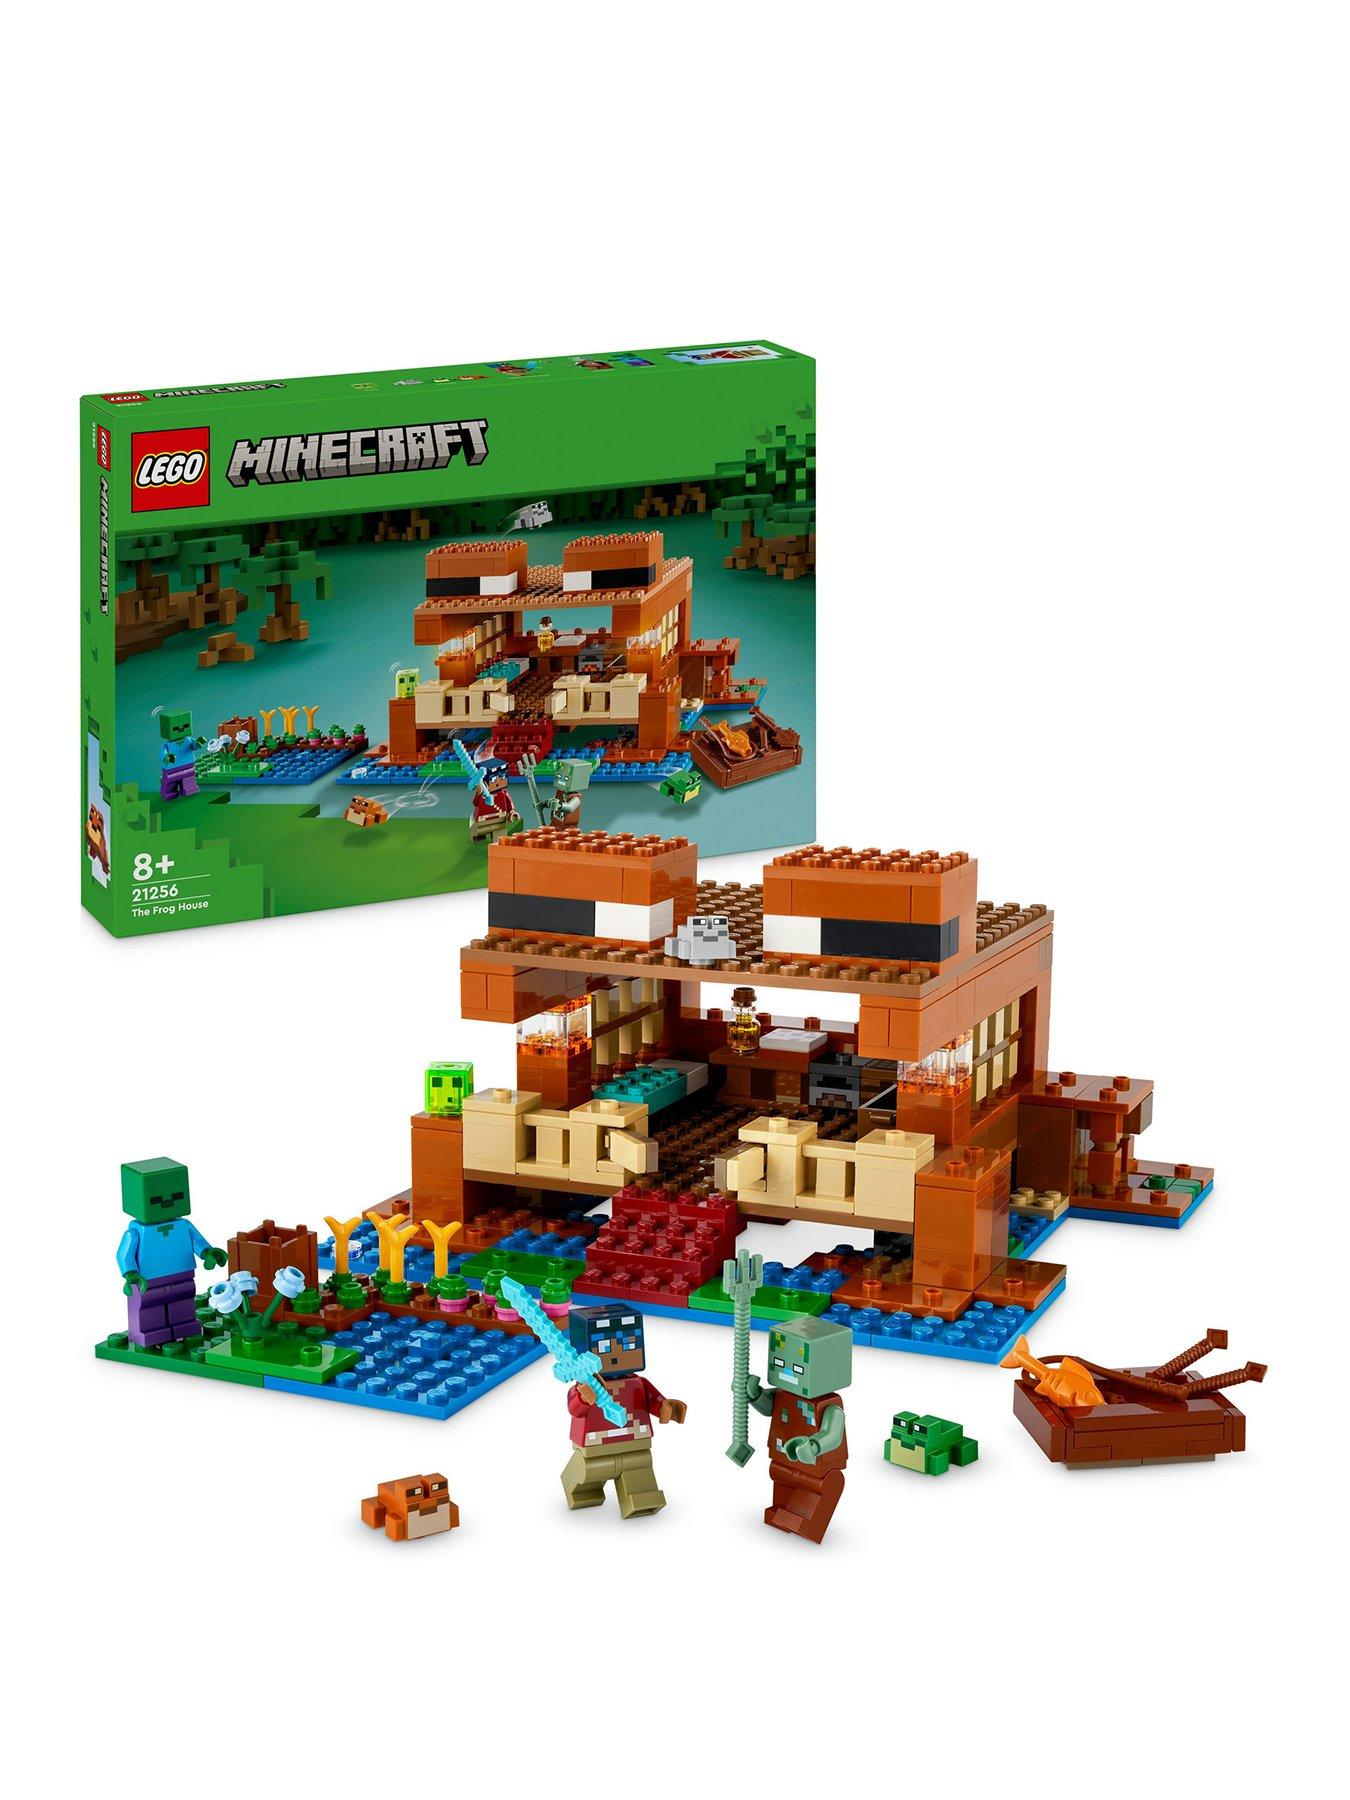 LEGO Minecraft Minifigure - Panda - small, baby - Extra Extra Bricks